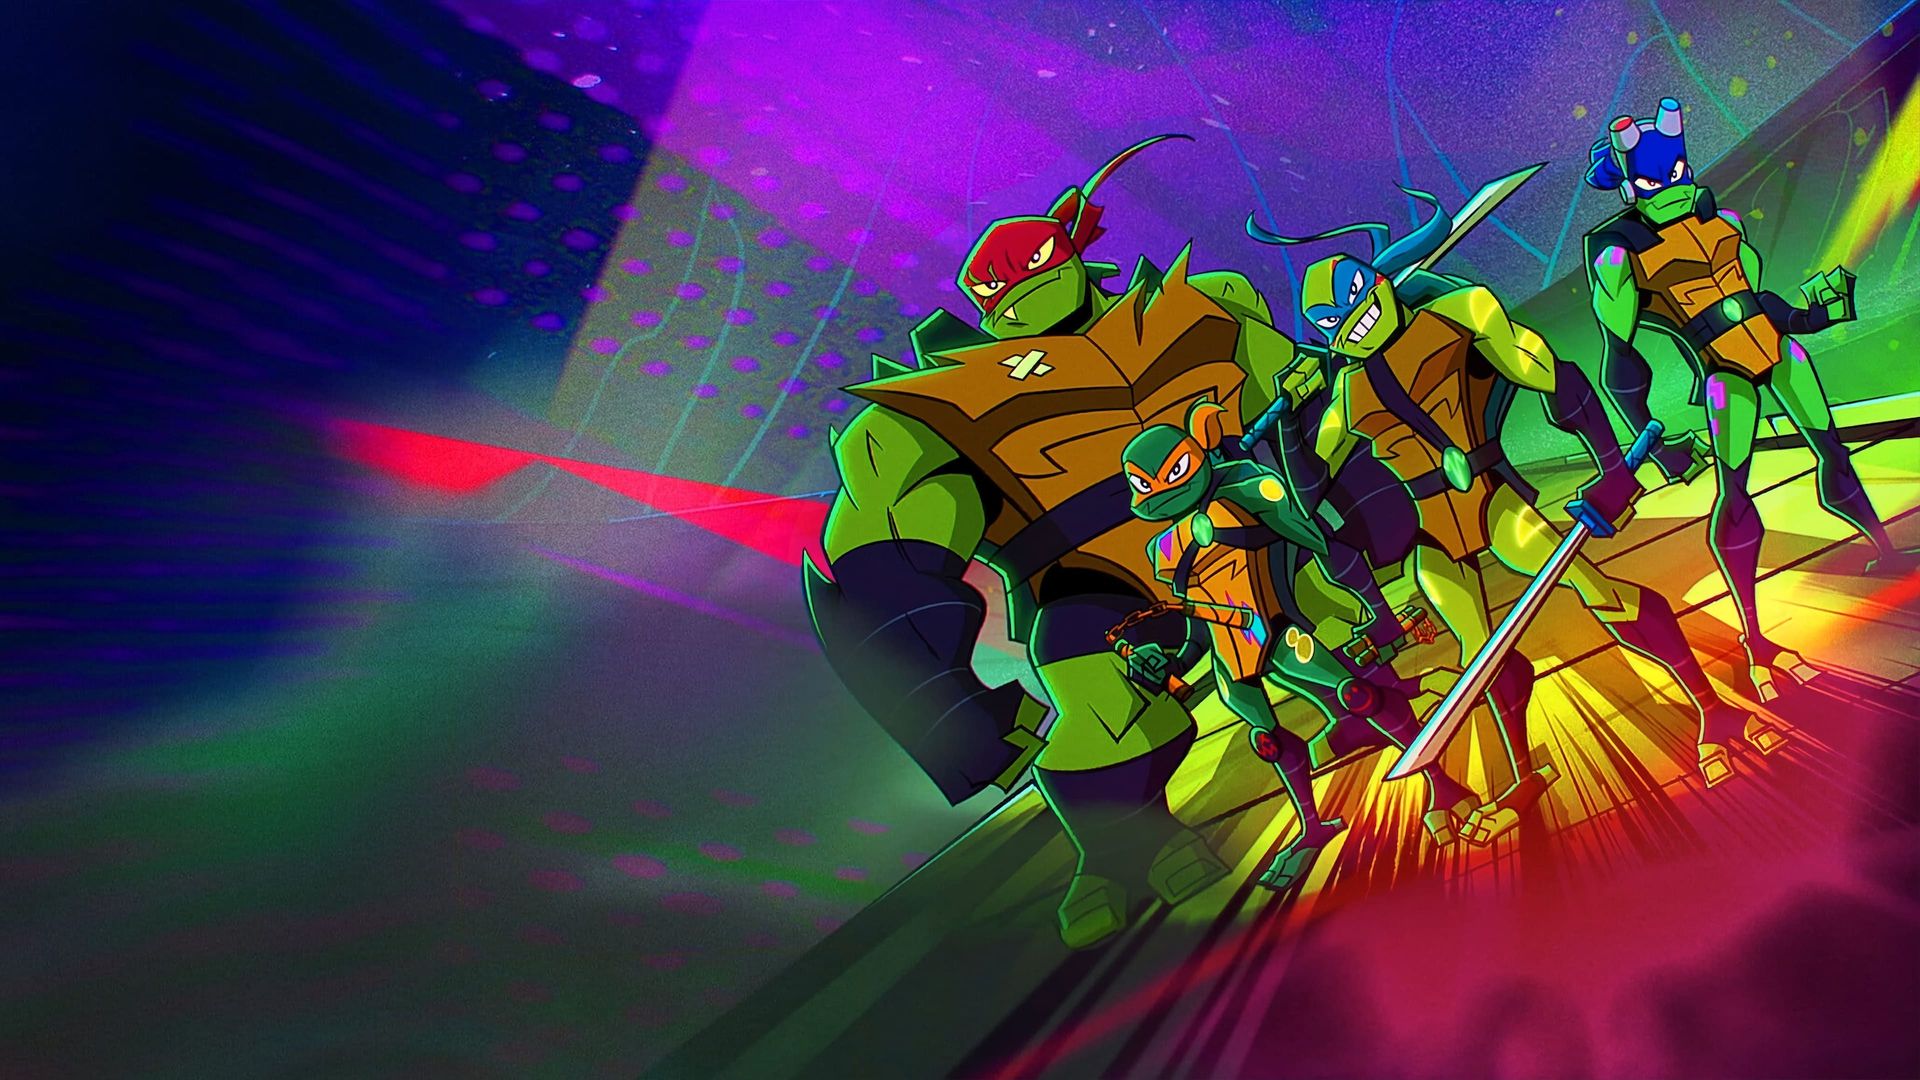 Rise of the Teenage Mutant Ninja Turtles: The Movie background